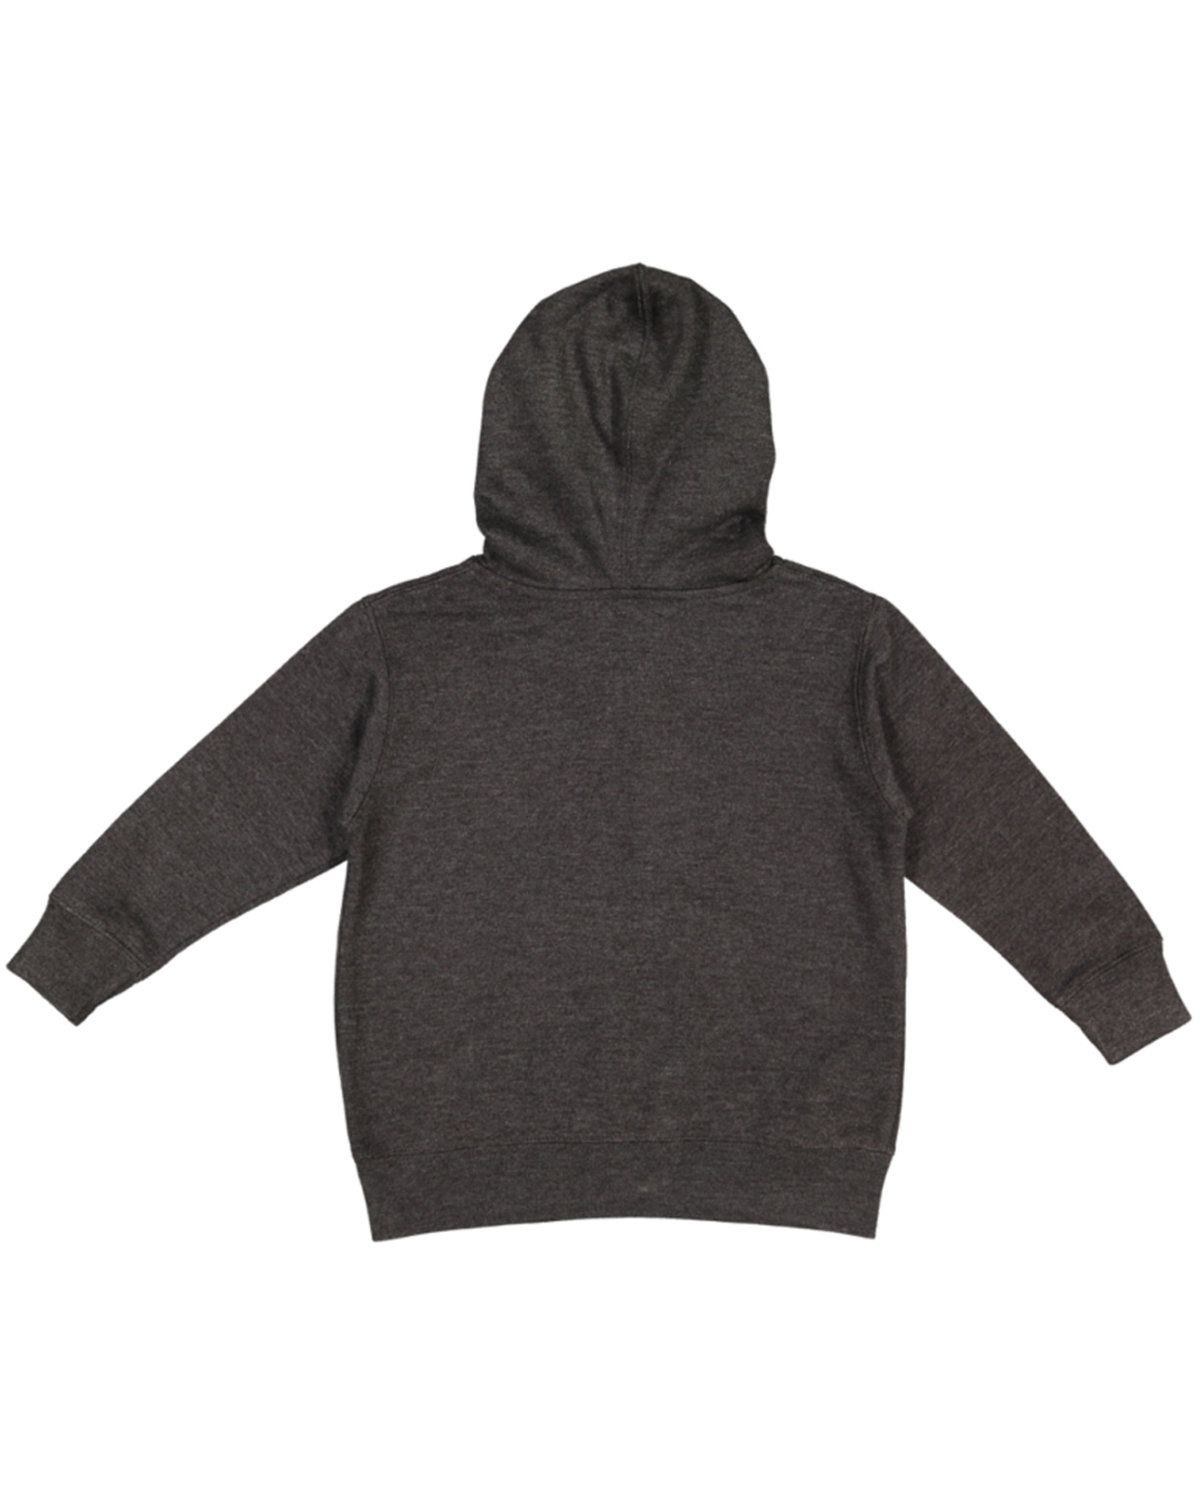 'Rabbit Skins 3346 Toddler Full-Zip Fleece Hooded Sweatshirt'